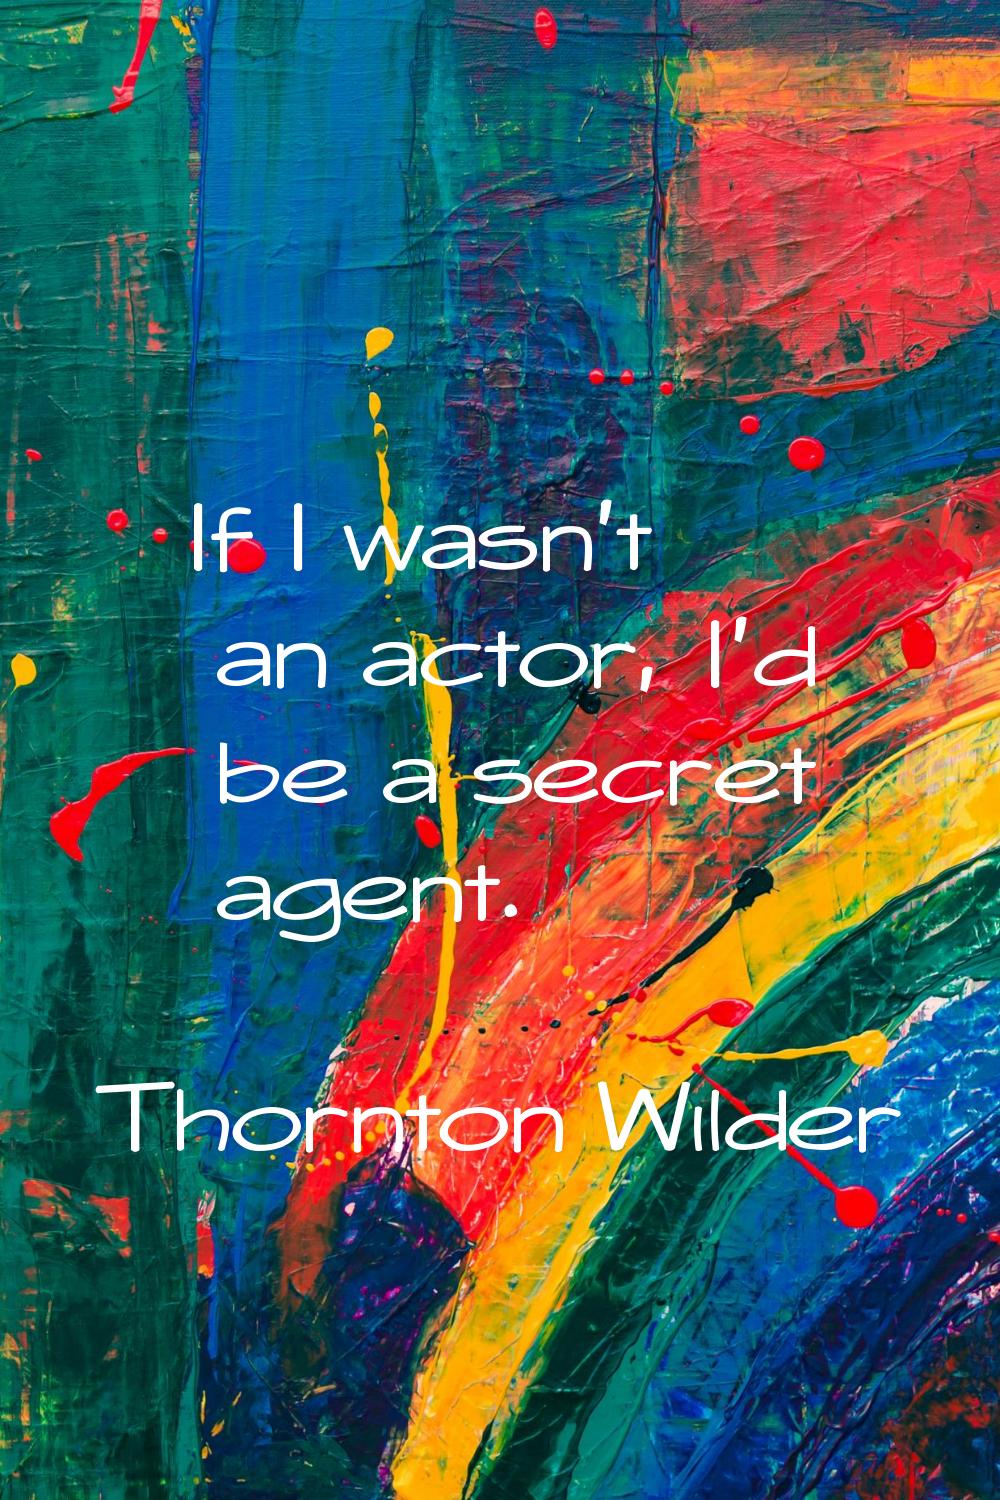 If I wasn't an actor, I'd be a secret agent.